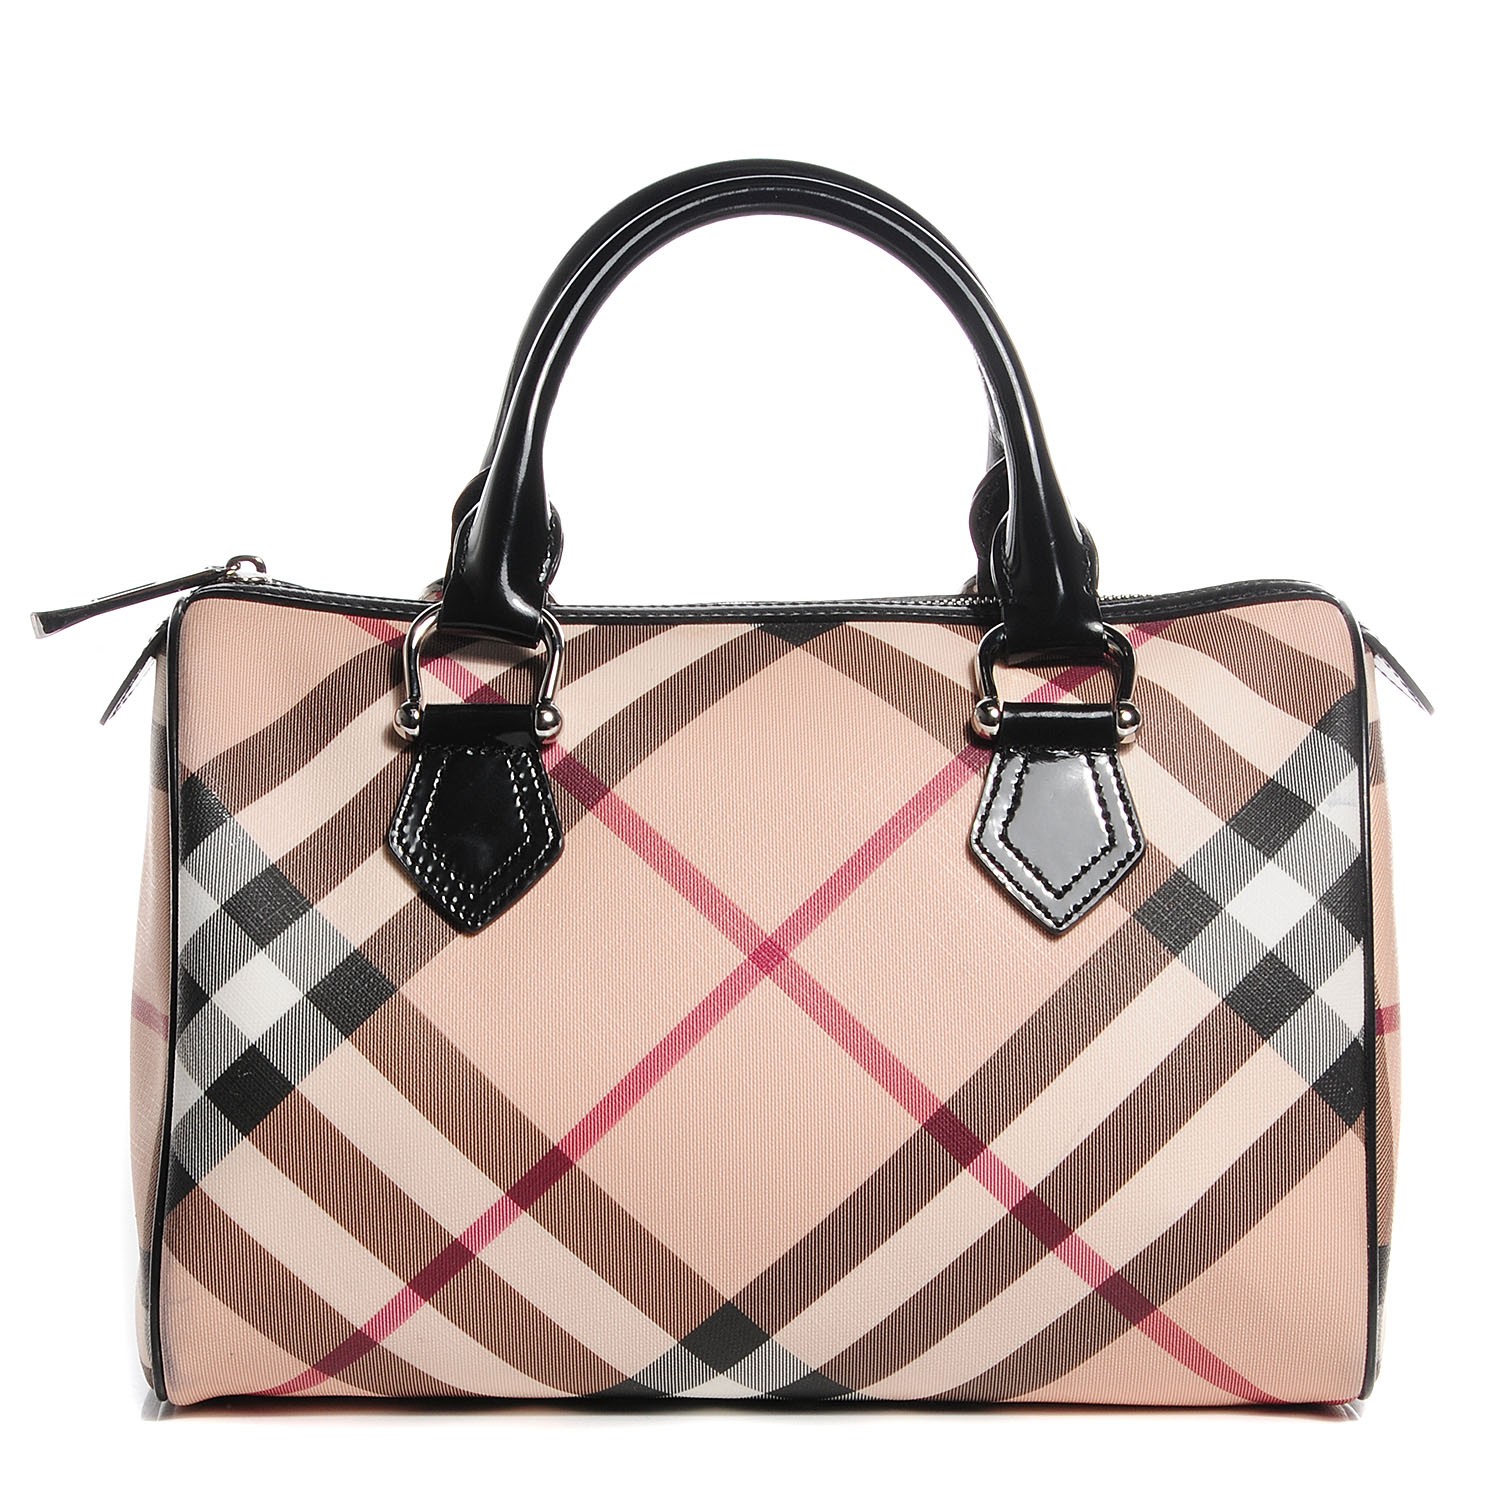 Burberry Handbags Outlet | semashow.com